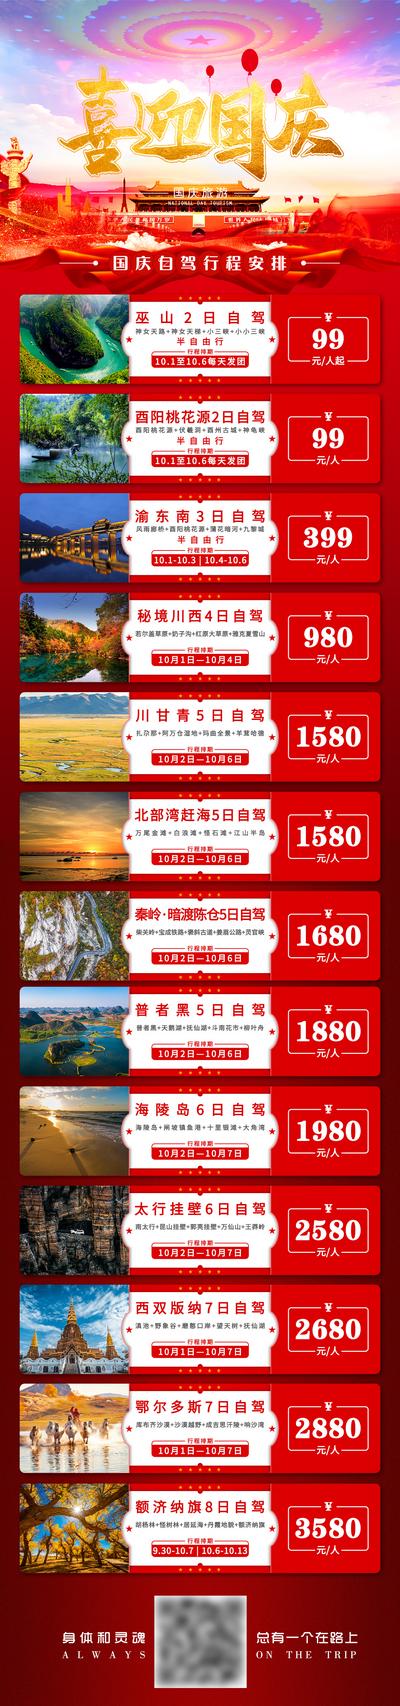 南门网 海报 长图 公历节日 国庆节 旅游 线路合集